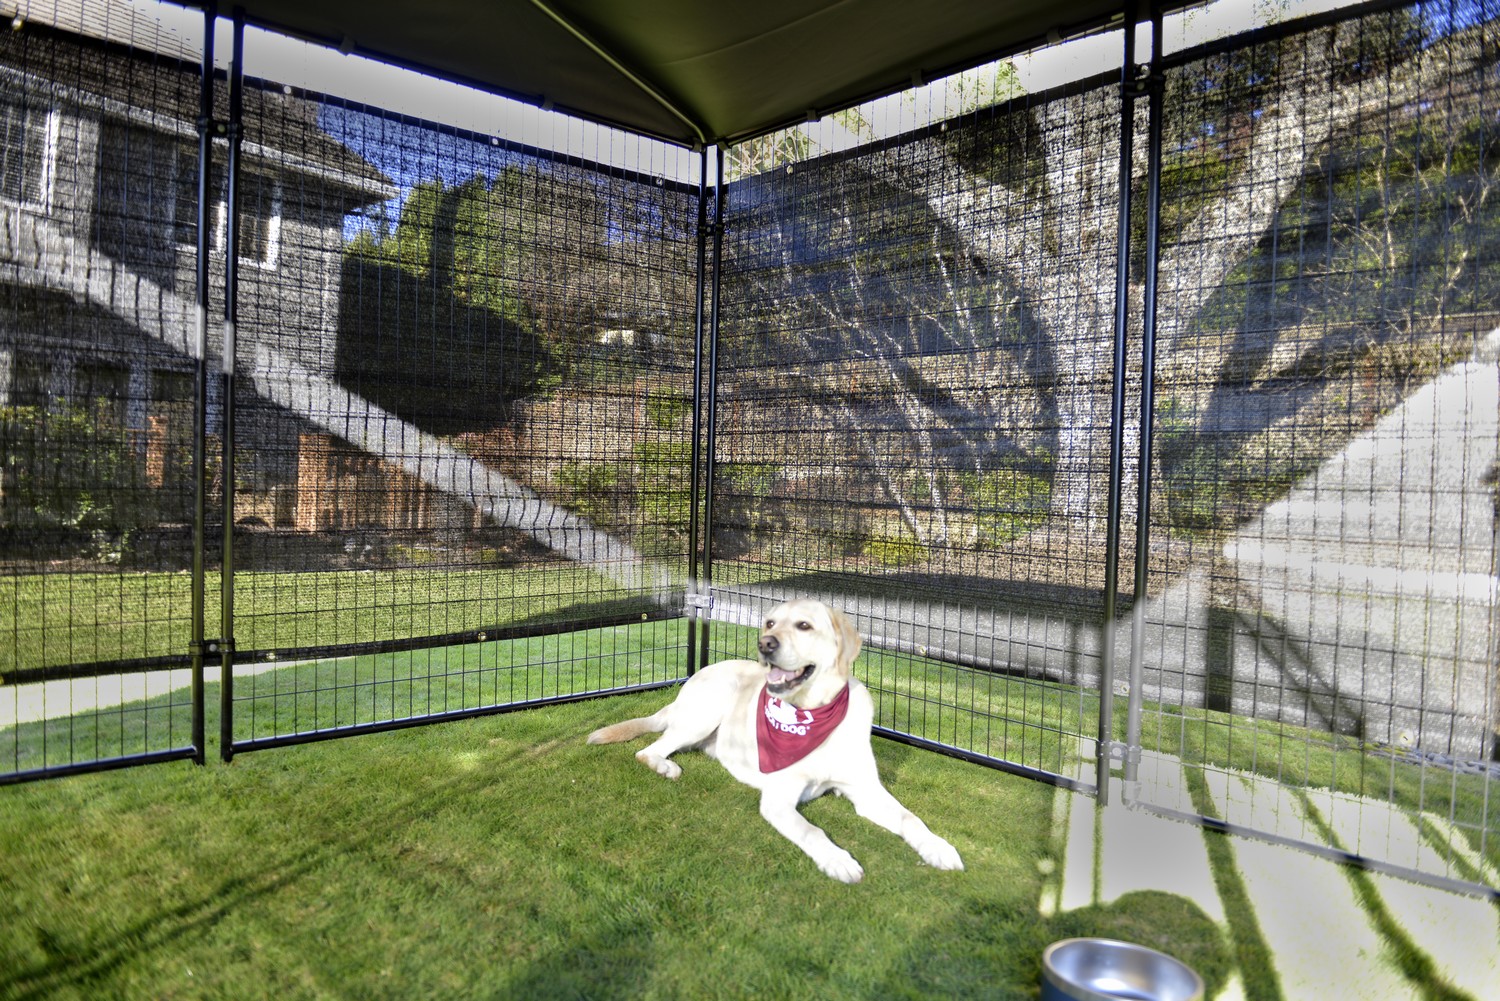 Helloshop26 - Chenil extérieur cage enclos parc animaux chien extérieur  avec toit pour chiens 8 x 4 x 2 m 02_0000458 - Clôture pour chien - Rue du  Commerce